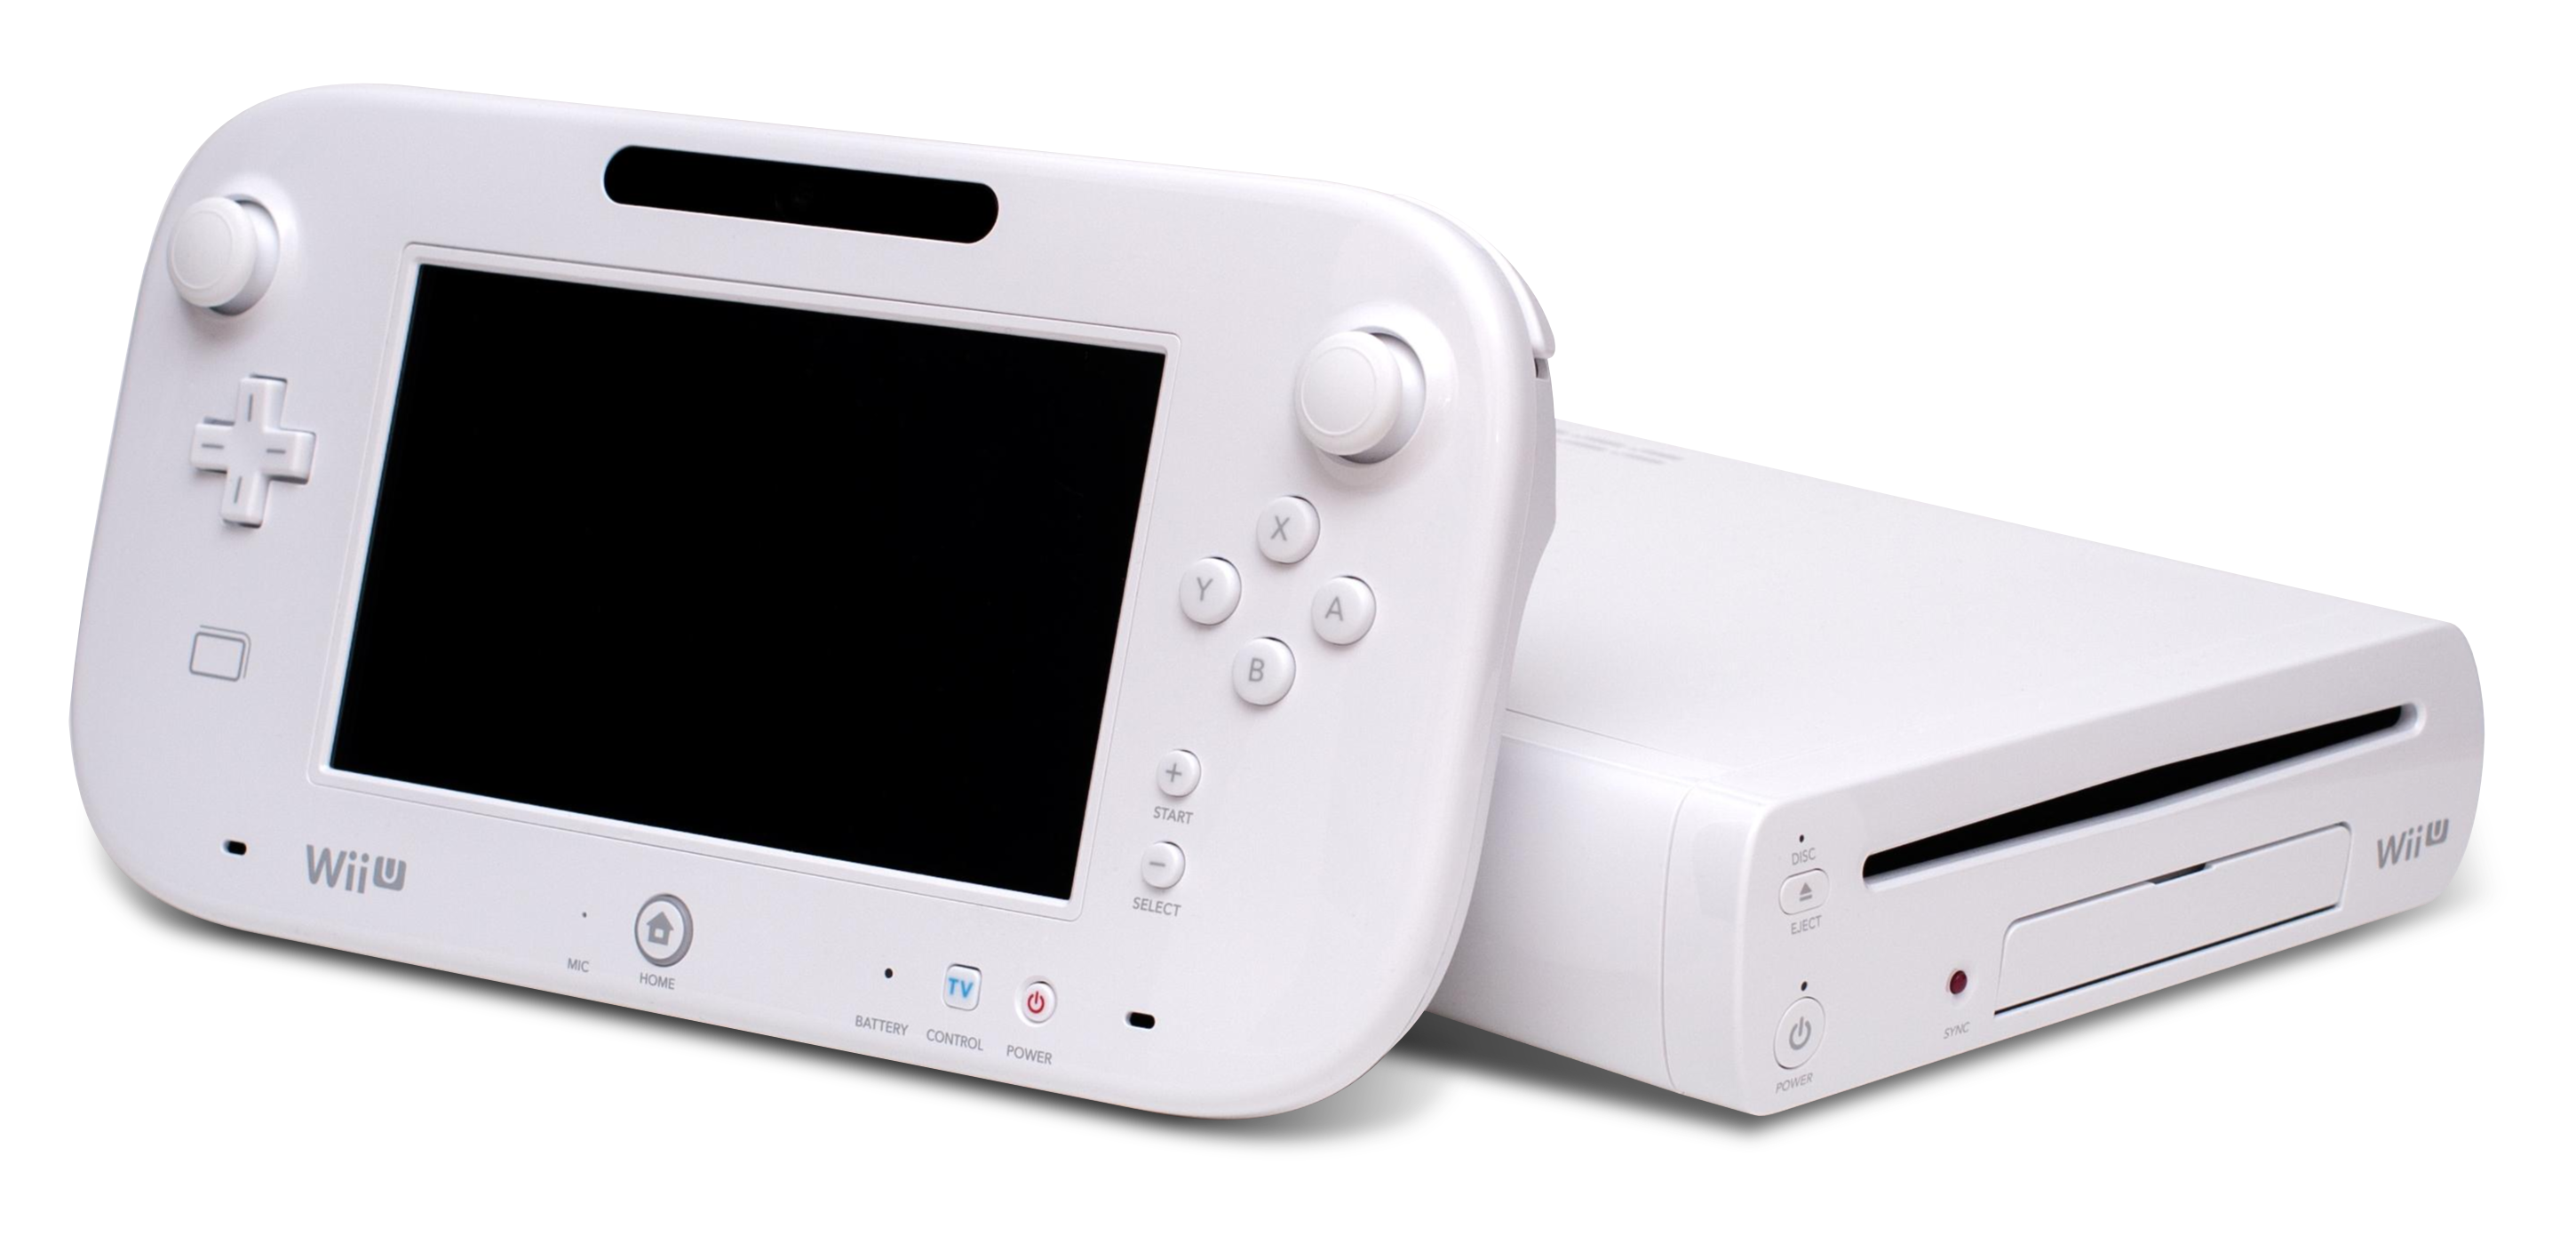 Snikken roltrap Roeispaan 10 grote verschillen tussen Nintendo Wii U en Wii: actueel schoolnieuws